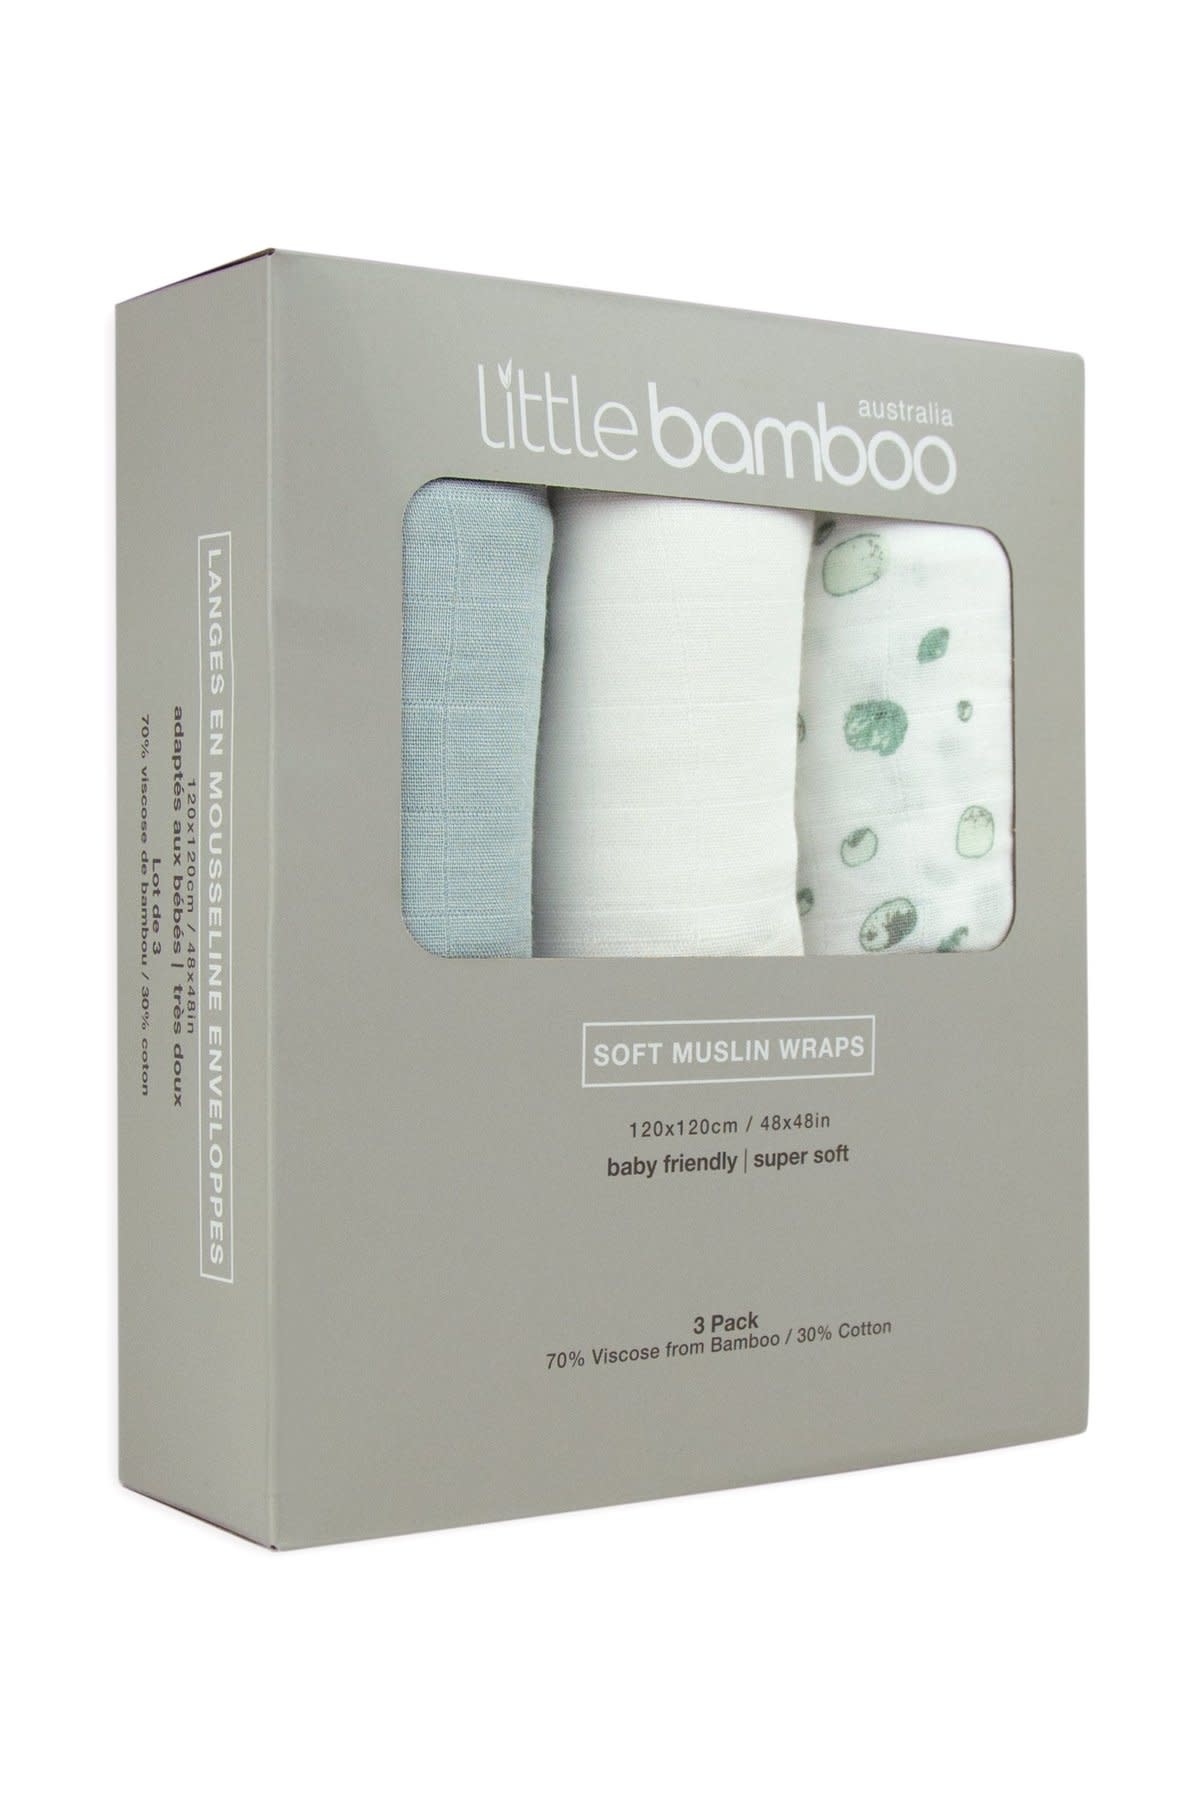 Little Bamboo Little Bamboo Muslin Wraps - 3 Pack